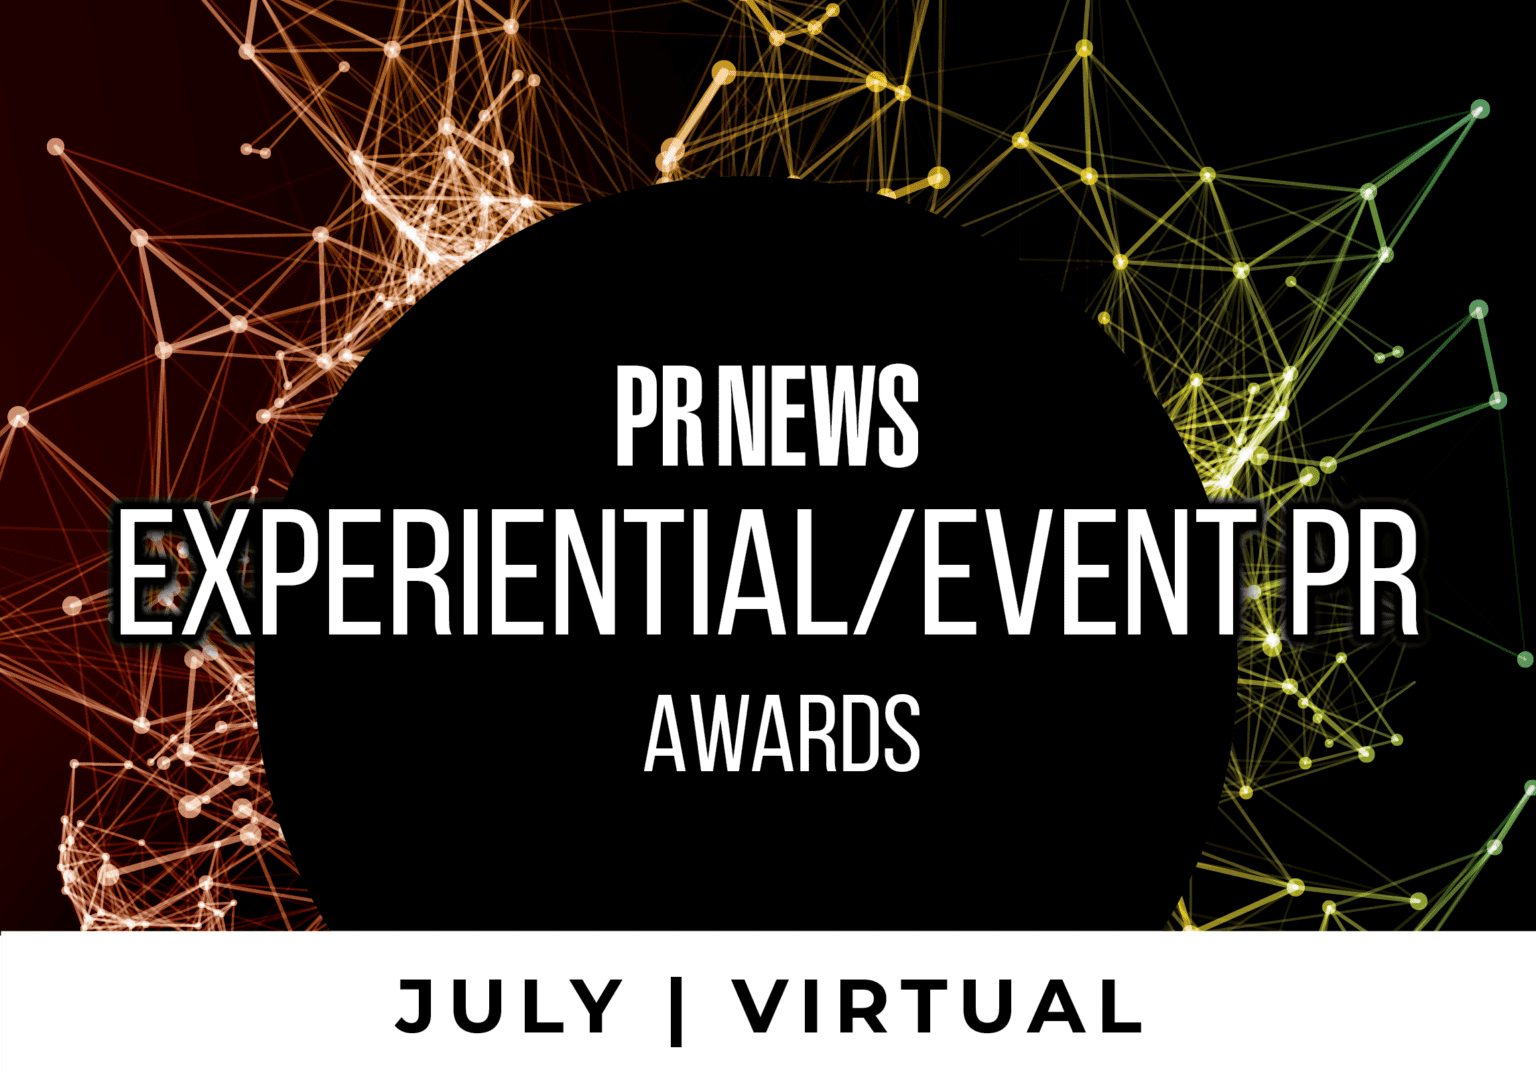 Experimental/Event PR Awards